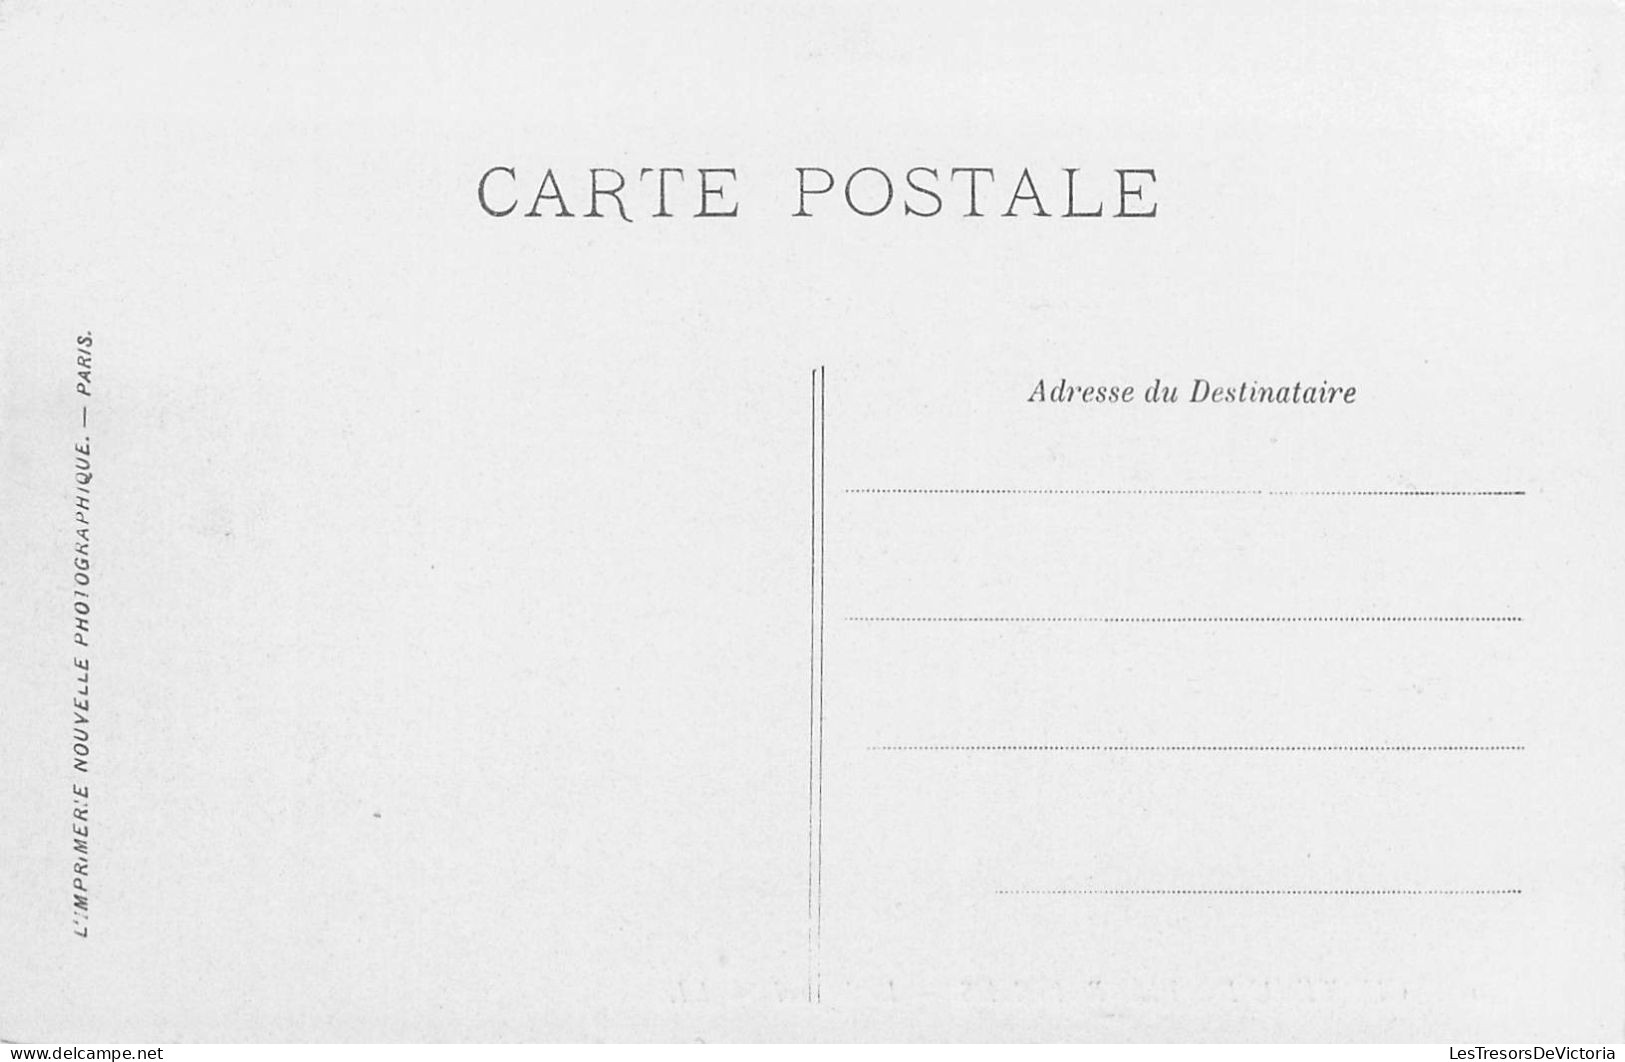 FRANCE - 60 - PIERREFONDS - Chateau De Pierrefonds - Le Beffroi - LL - Carte Postale Ancienne - Pierrefonds